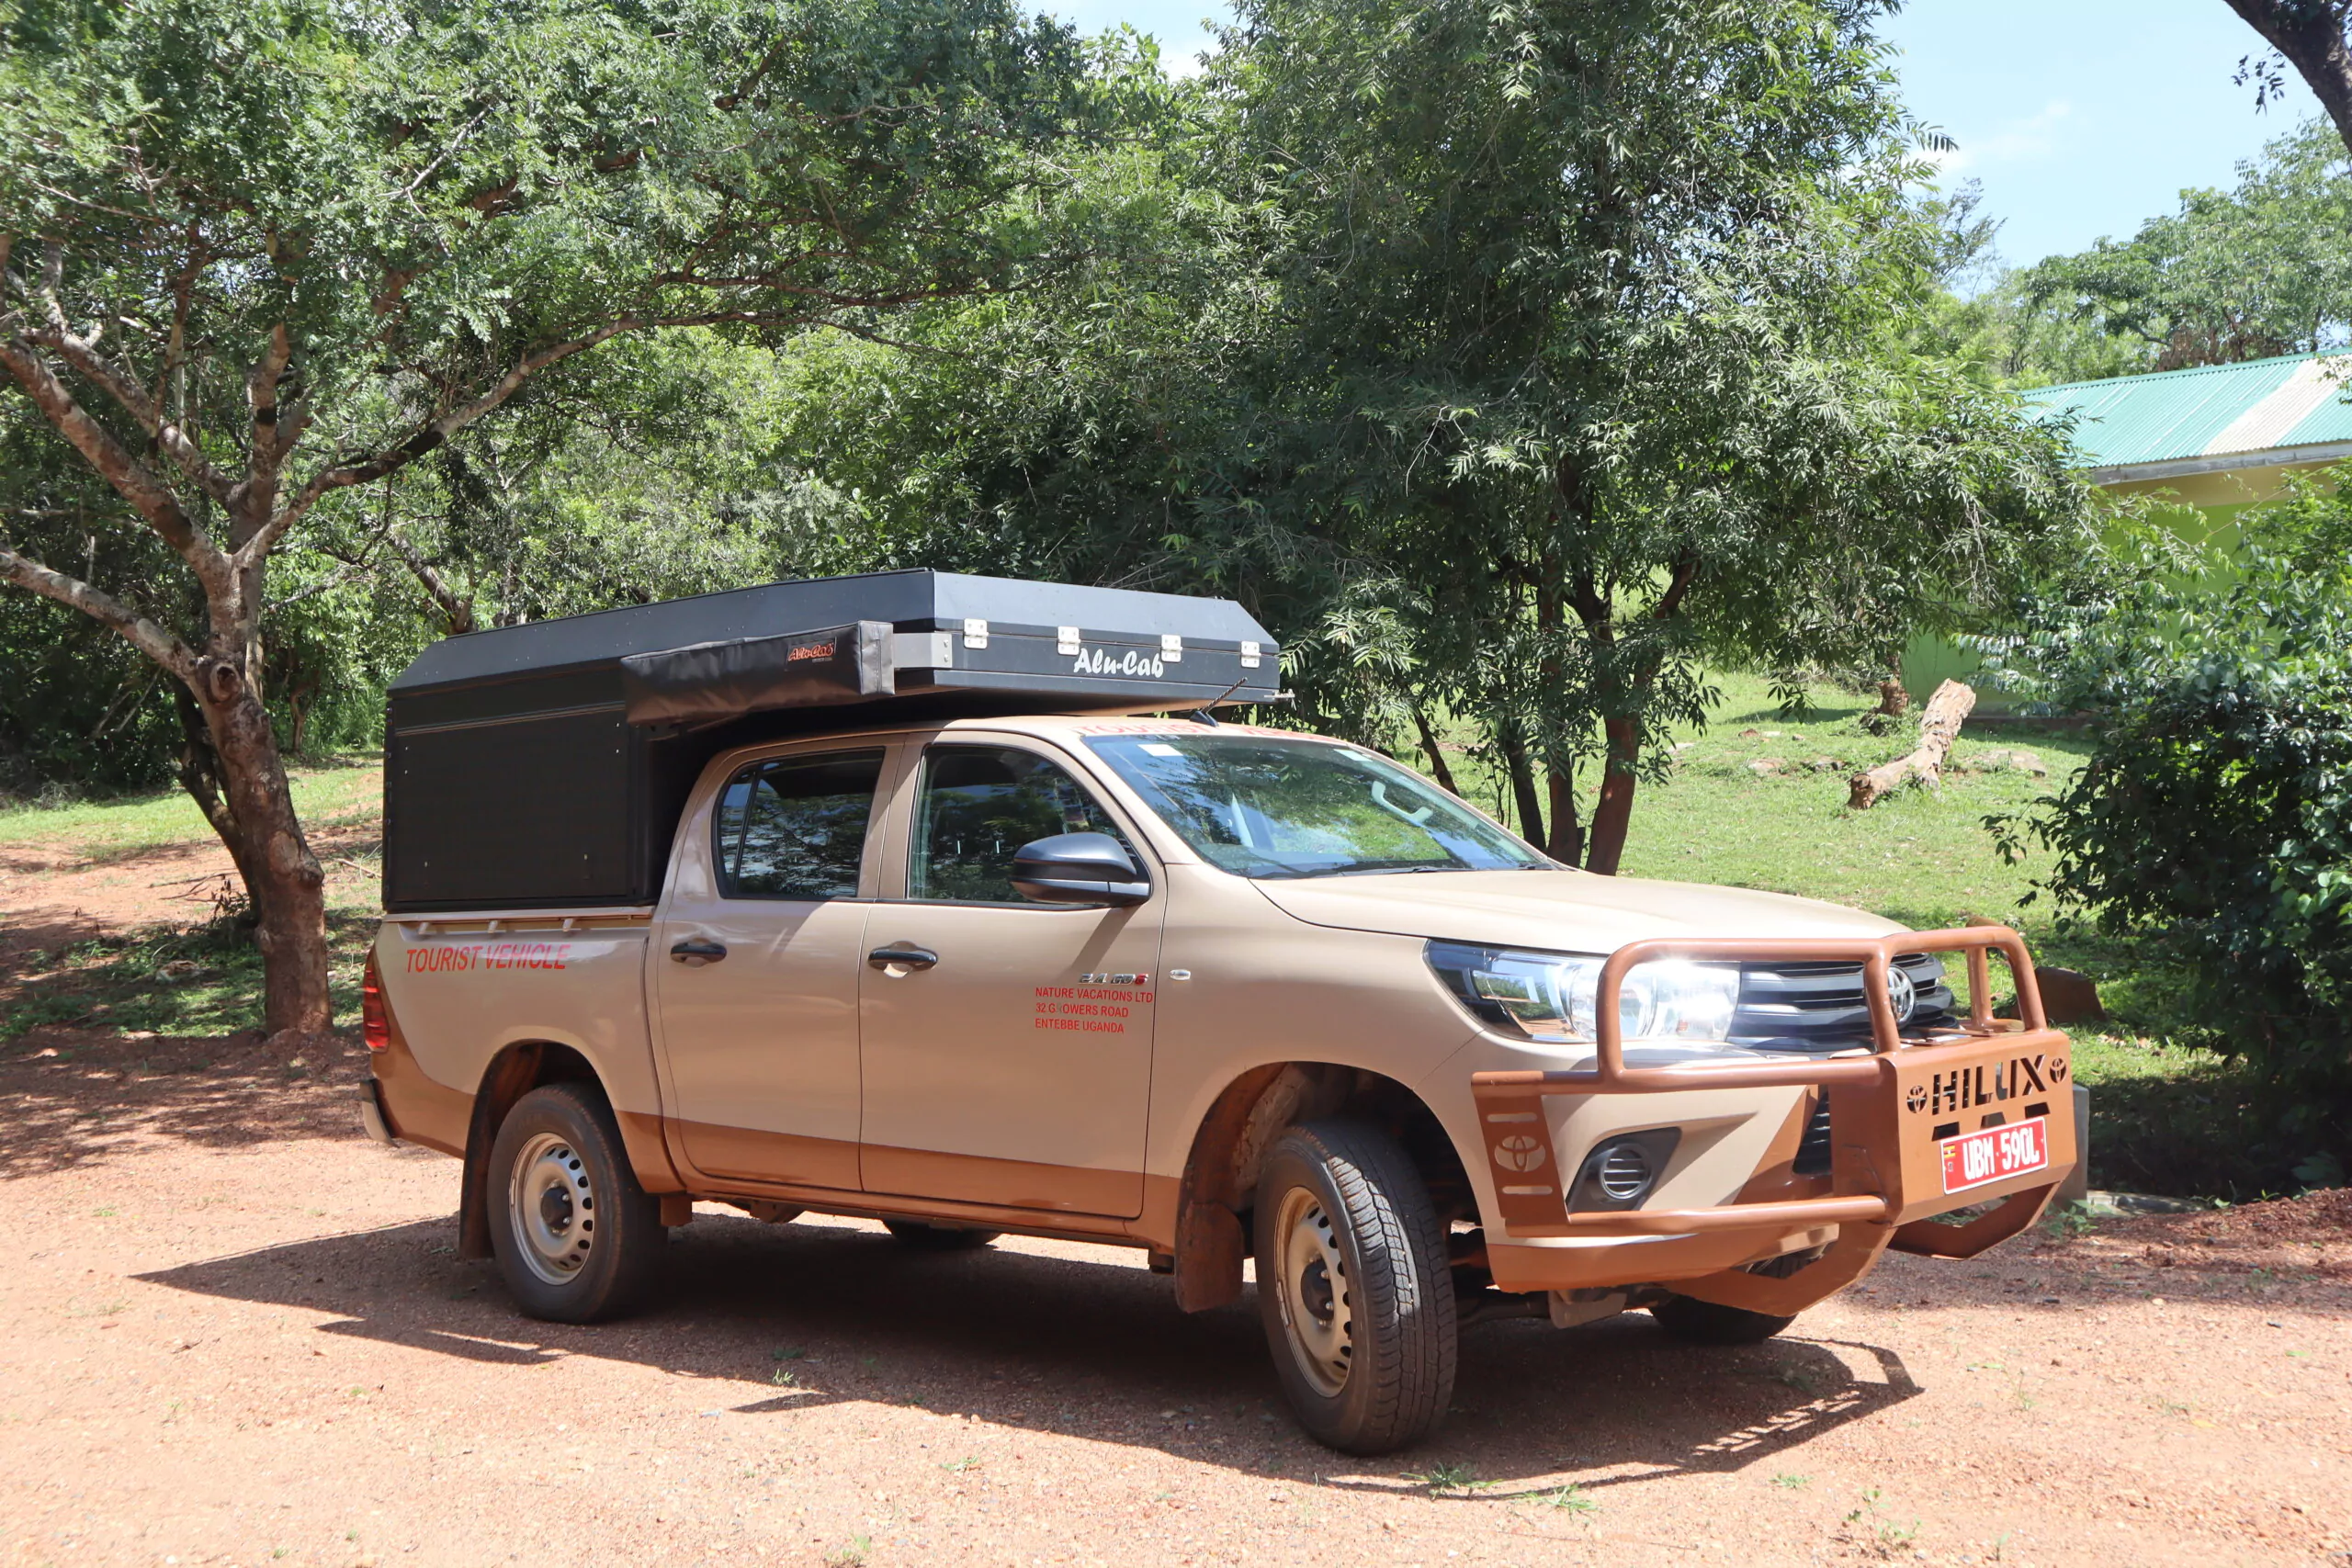 Uganda Selbstfahrer Reise Toyota Hilux mit Canopy Camper auf Parkplatz